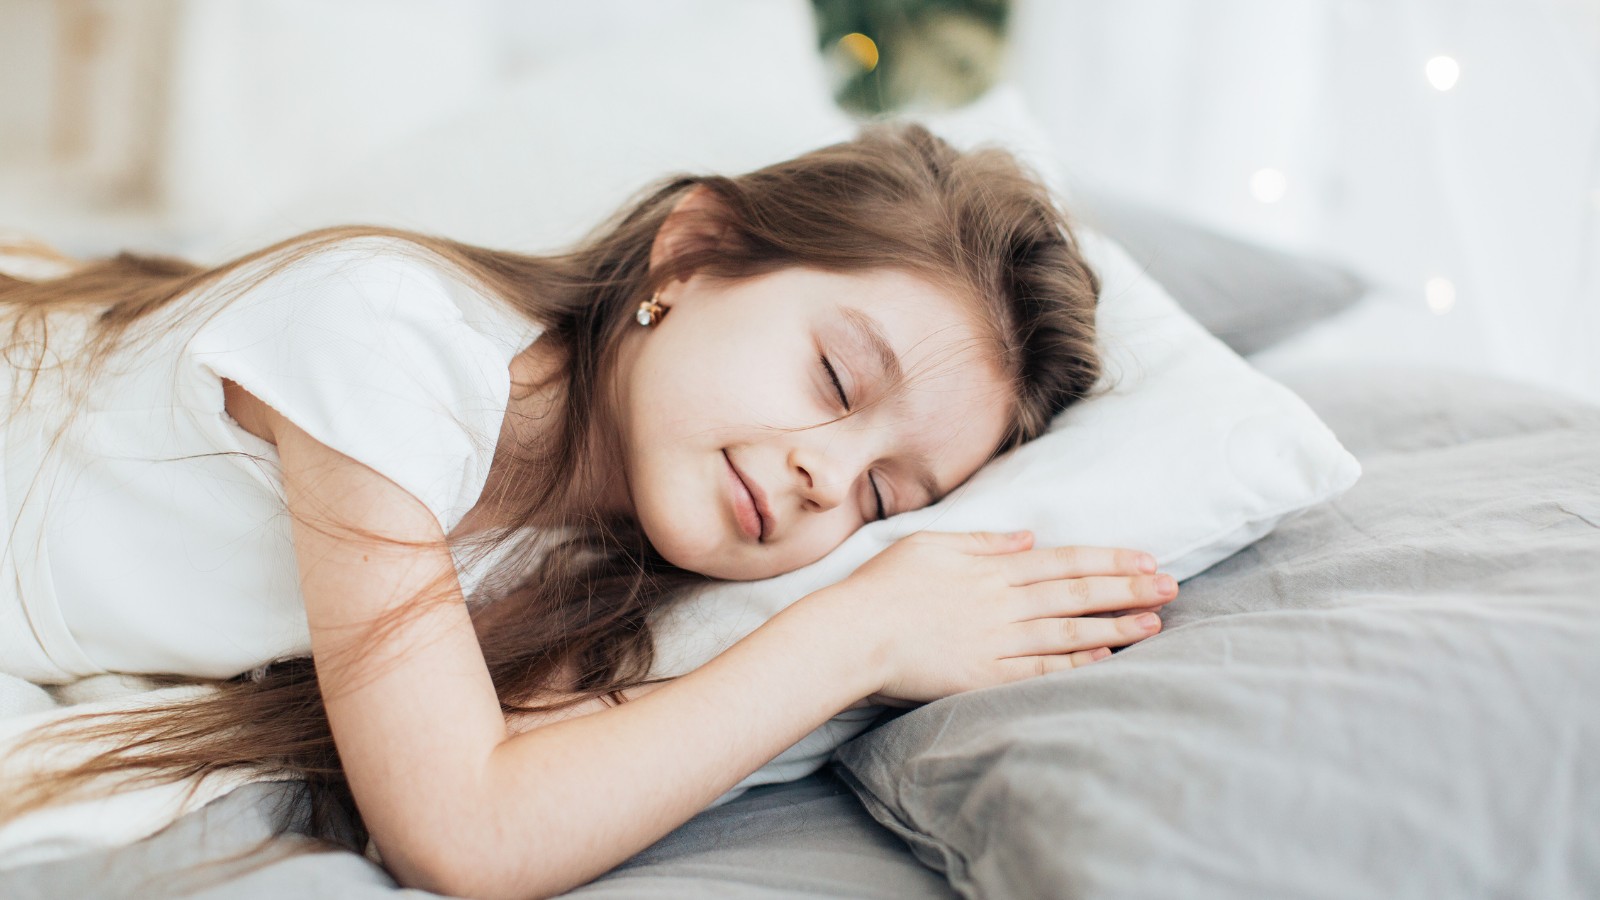 Cung cấp đủ tryptophan giúp cải thiện chất lượng giấc ngủ và làm giảm căng thẳng